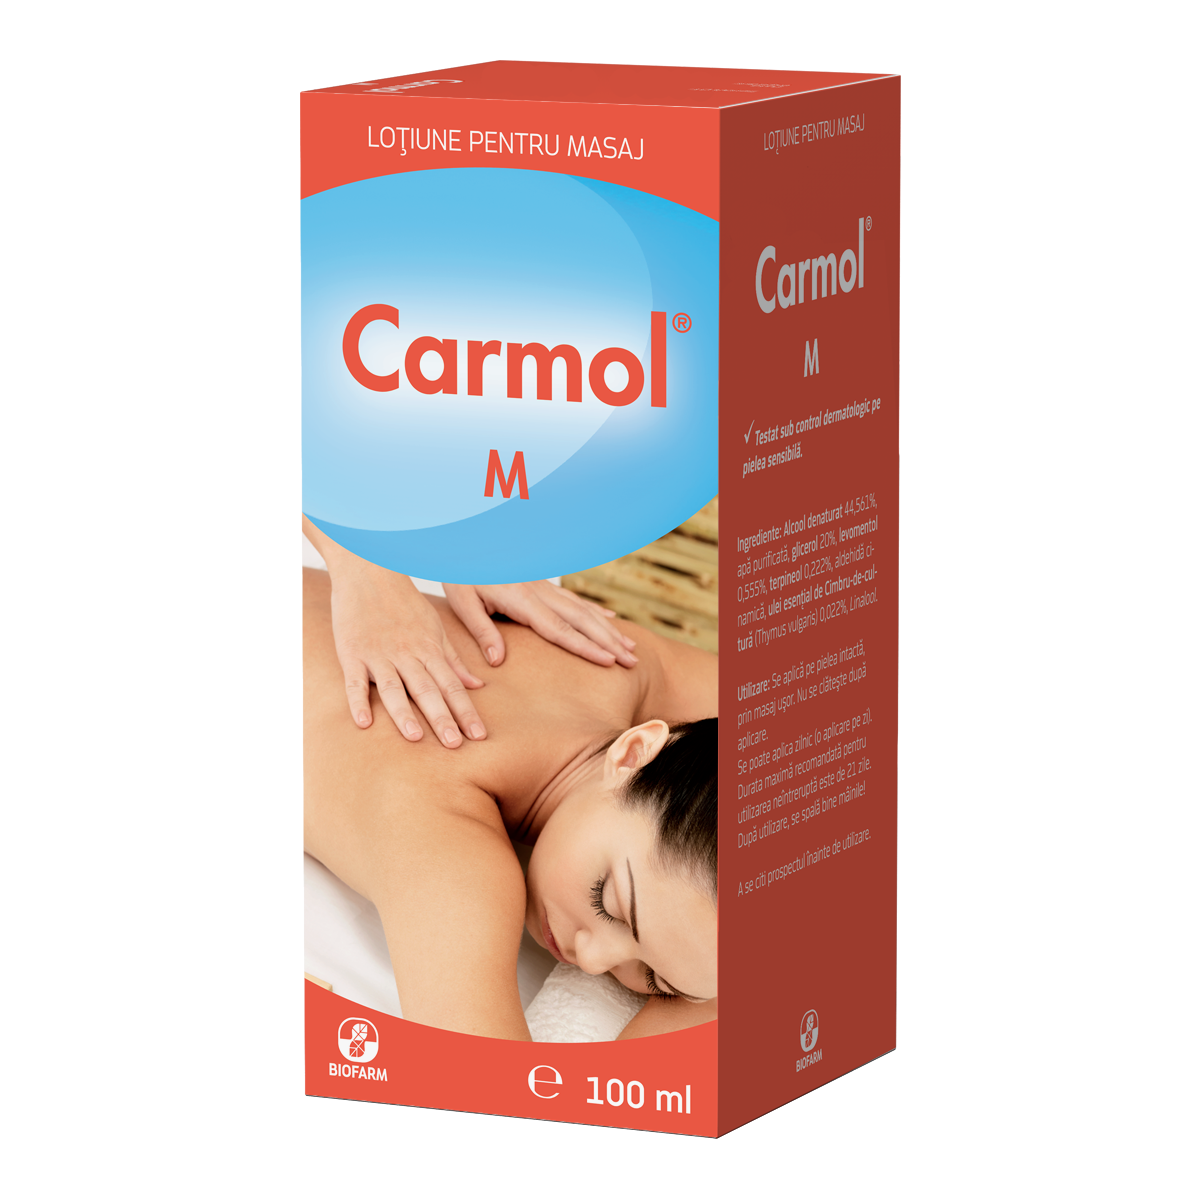 carmol antiinflamator ruperea sindrozei articulației gleznei